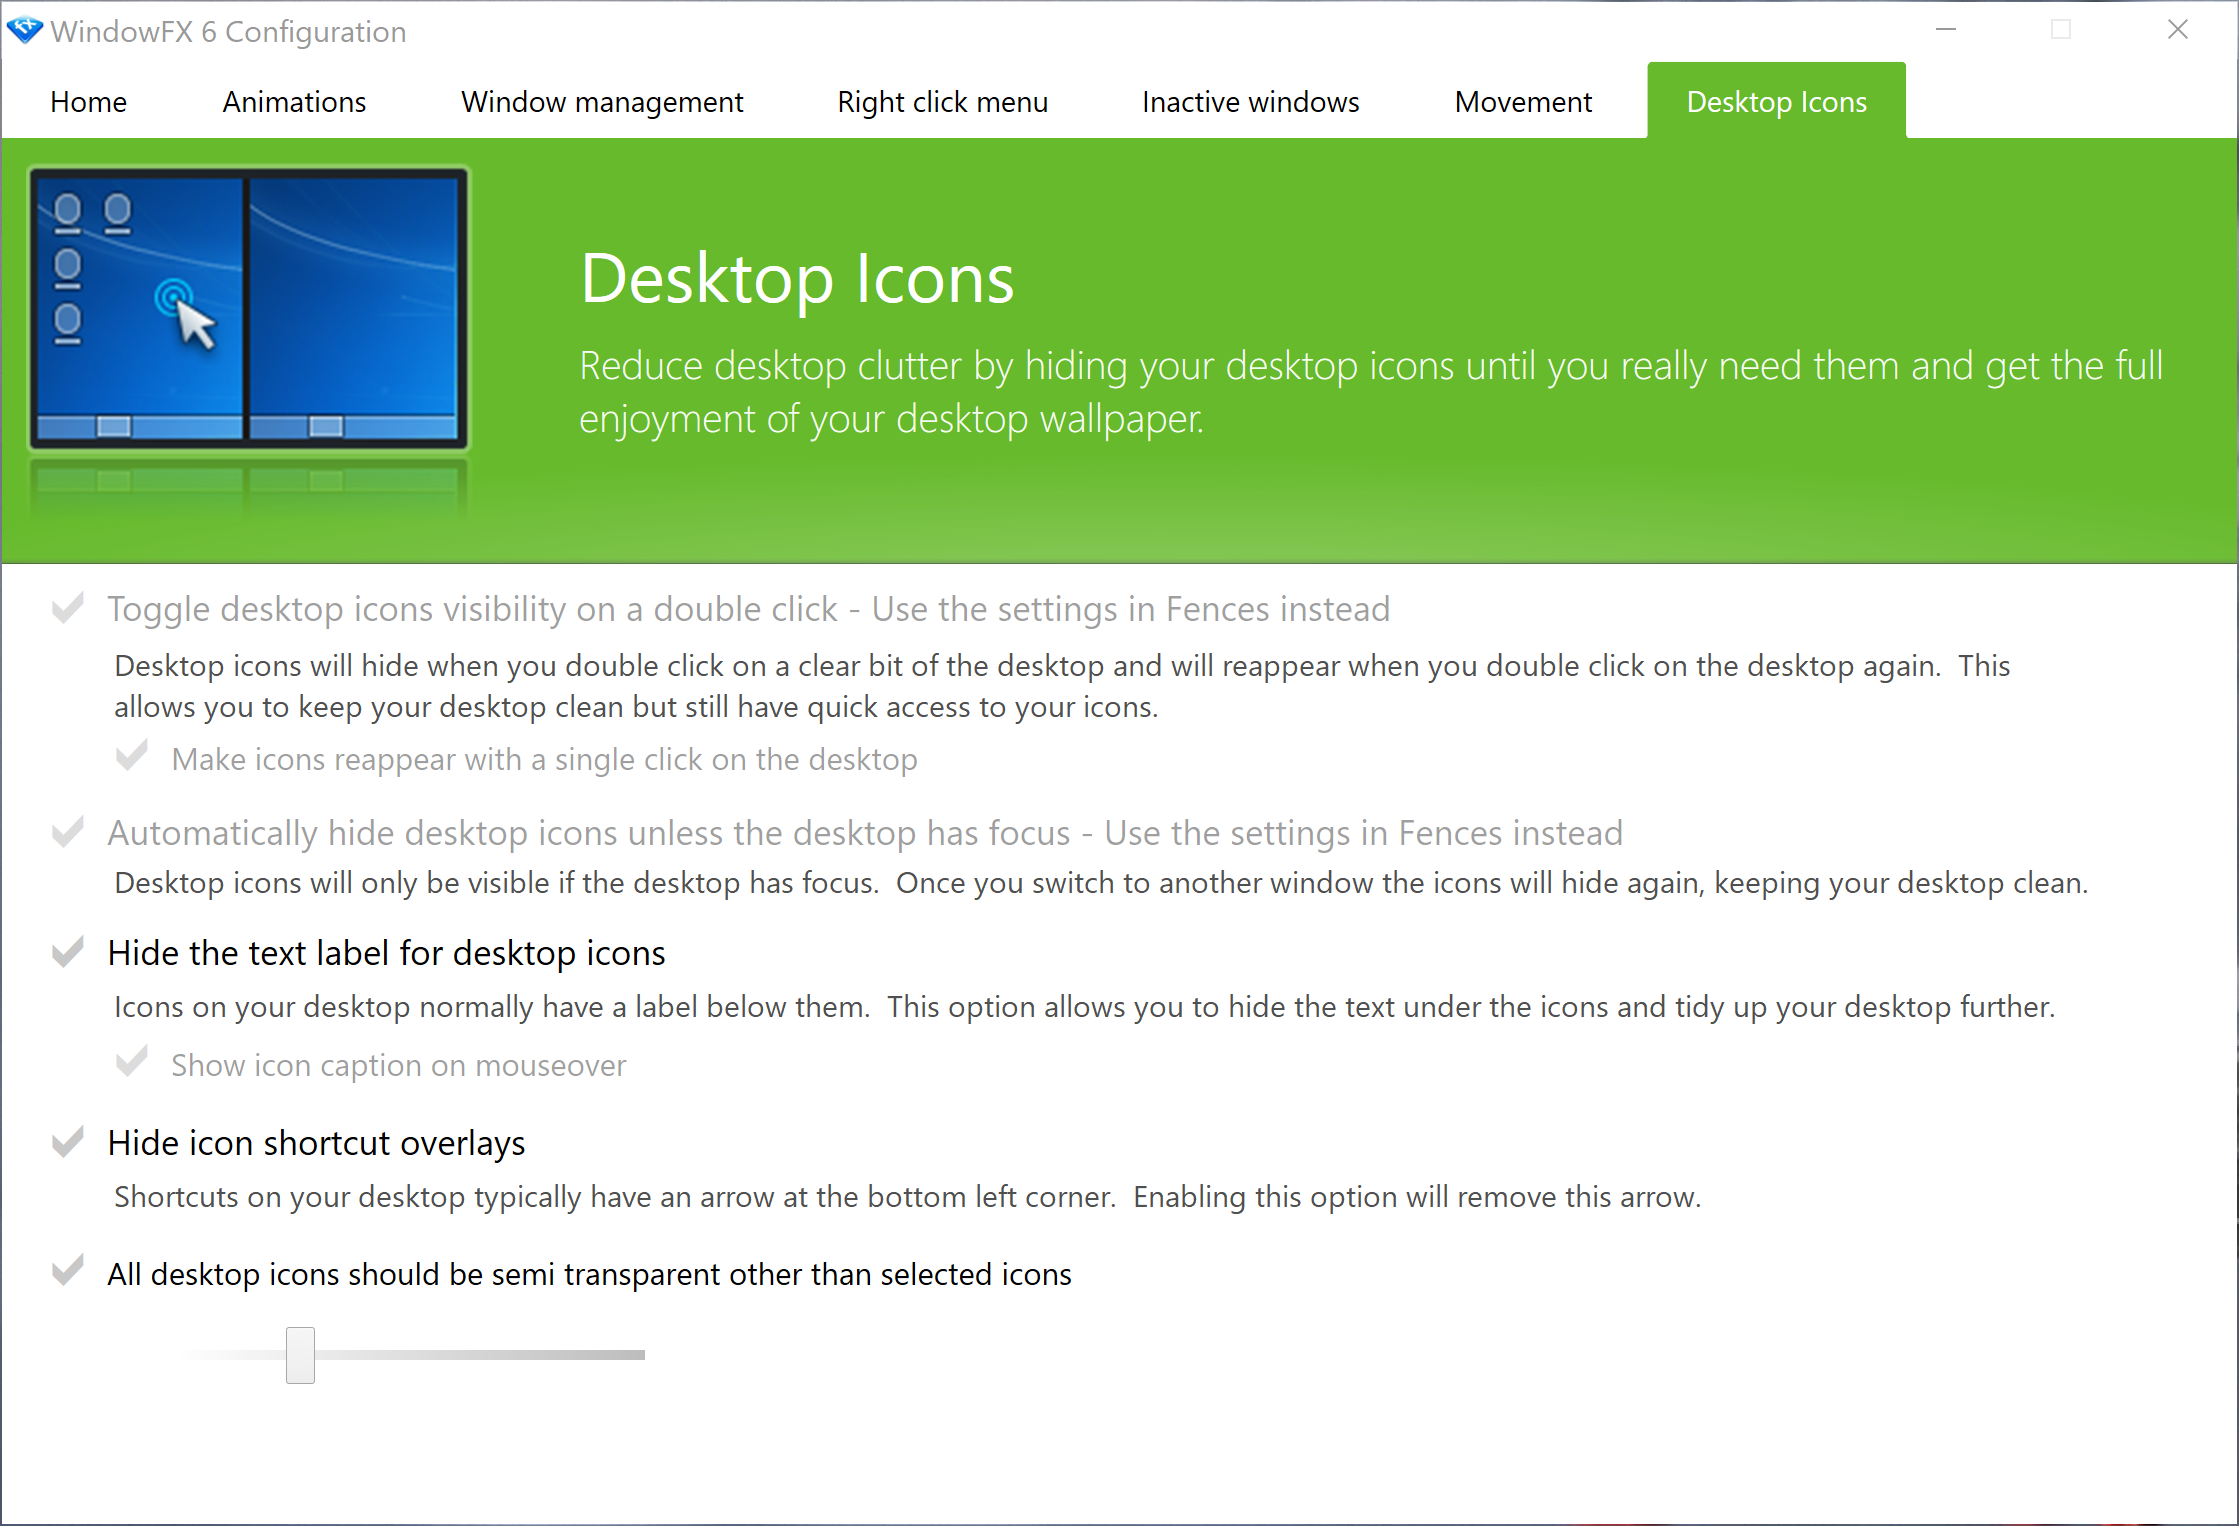 Desktop icons configuration